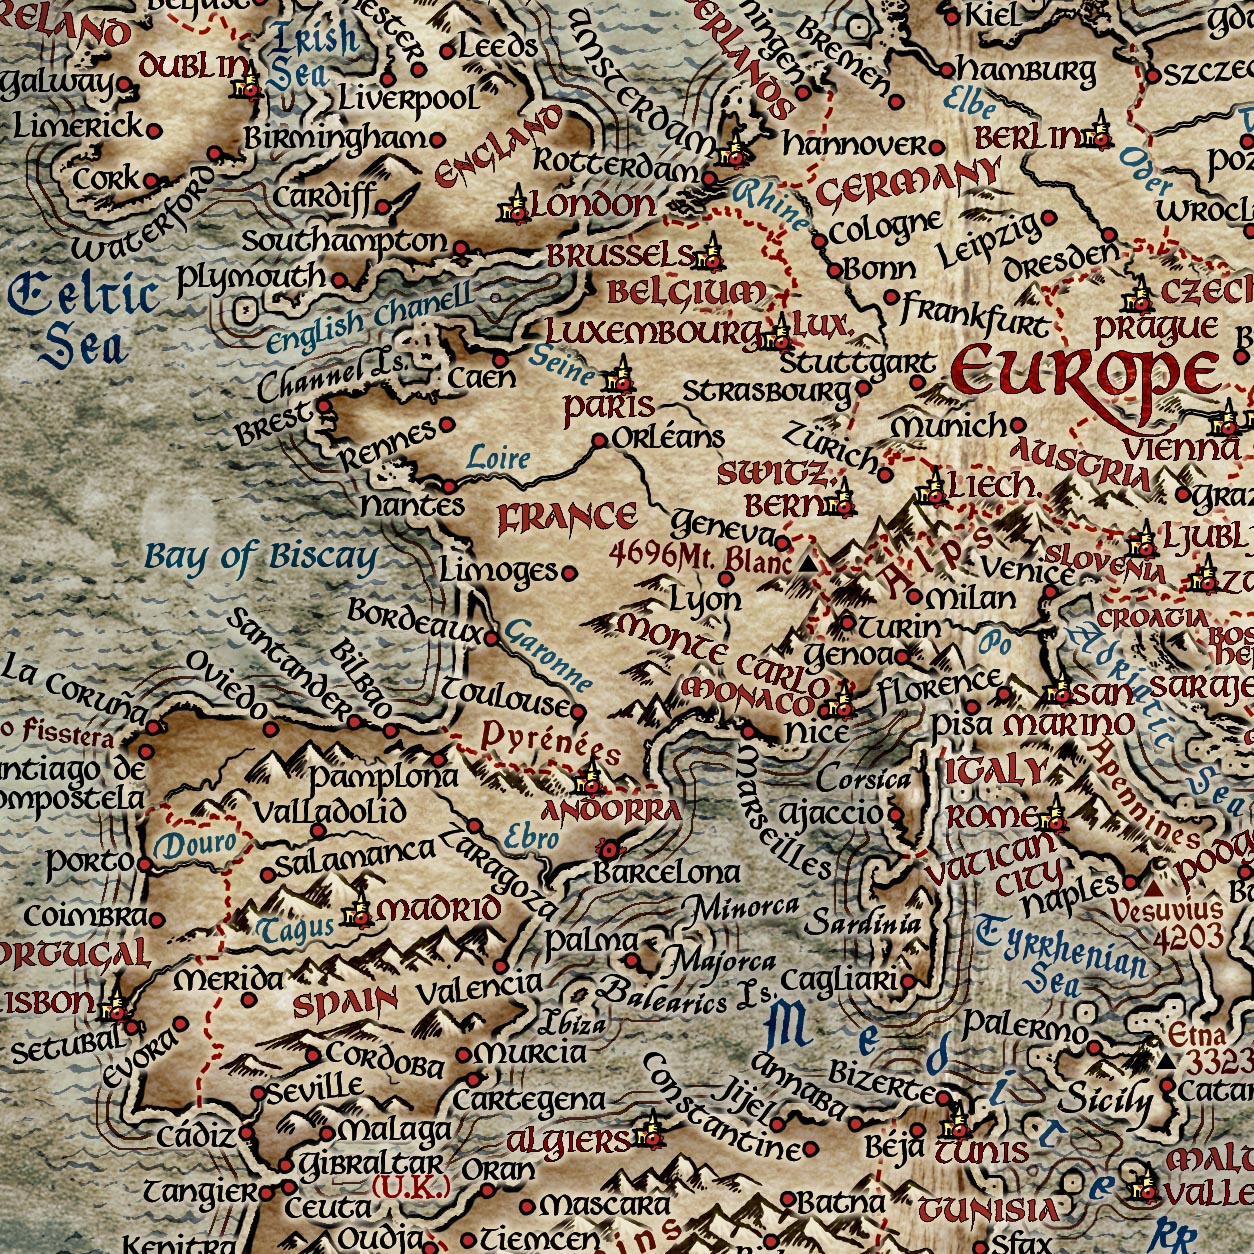 Mapa del Viejo Mundo Mapa mundial de El Señor de los Anillos, 2022: estilo de fantasía, características geográficas detalladas, apariencia vintage